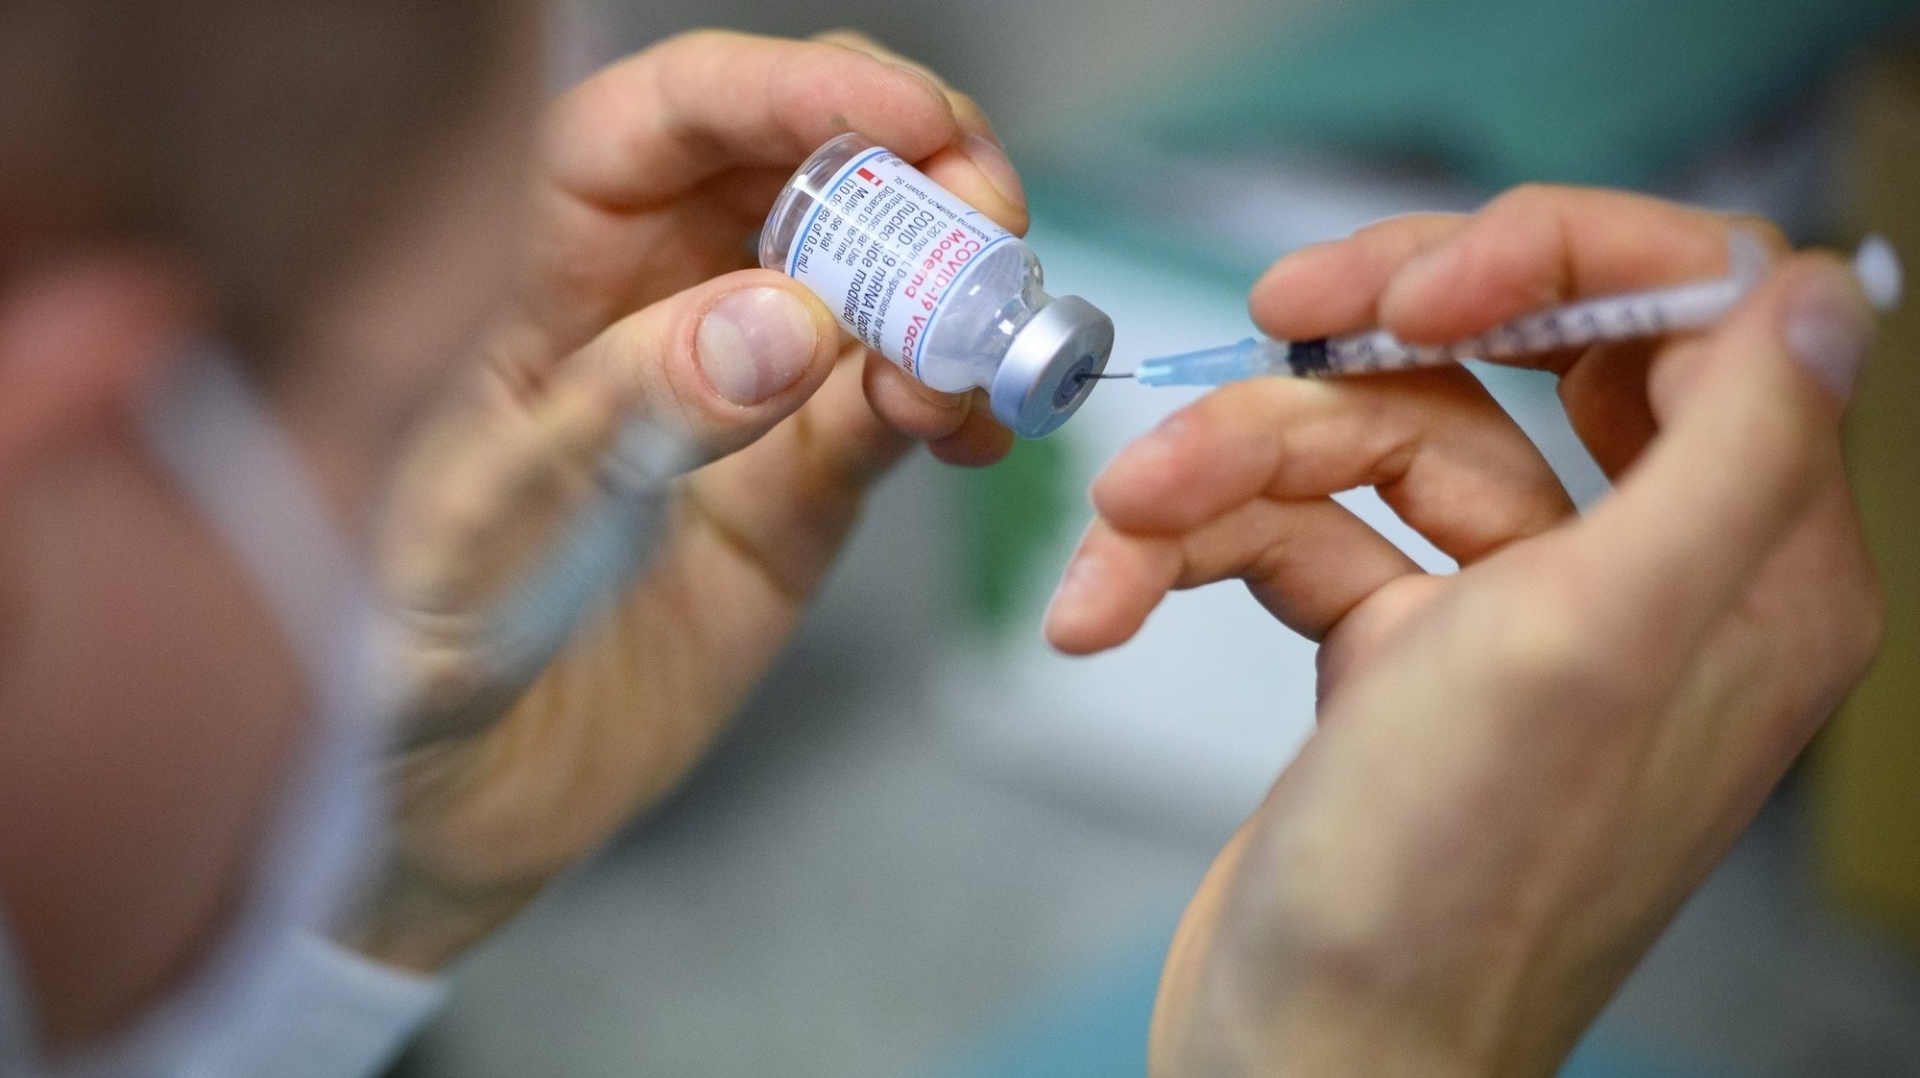 Le canton a décidé d'étendre son offre de vaccination anti-Covid.